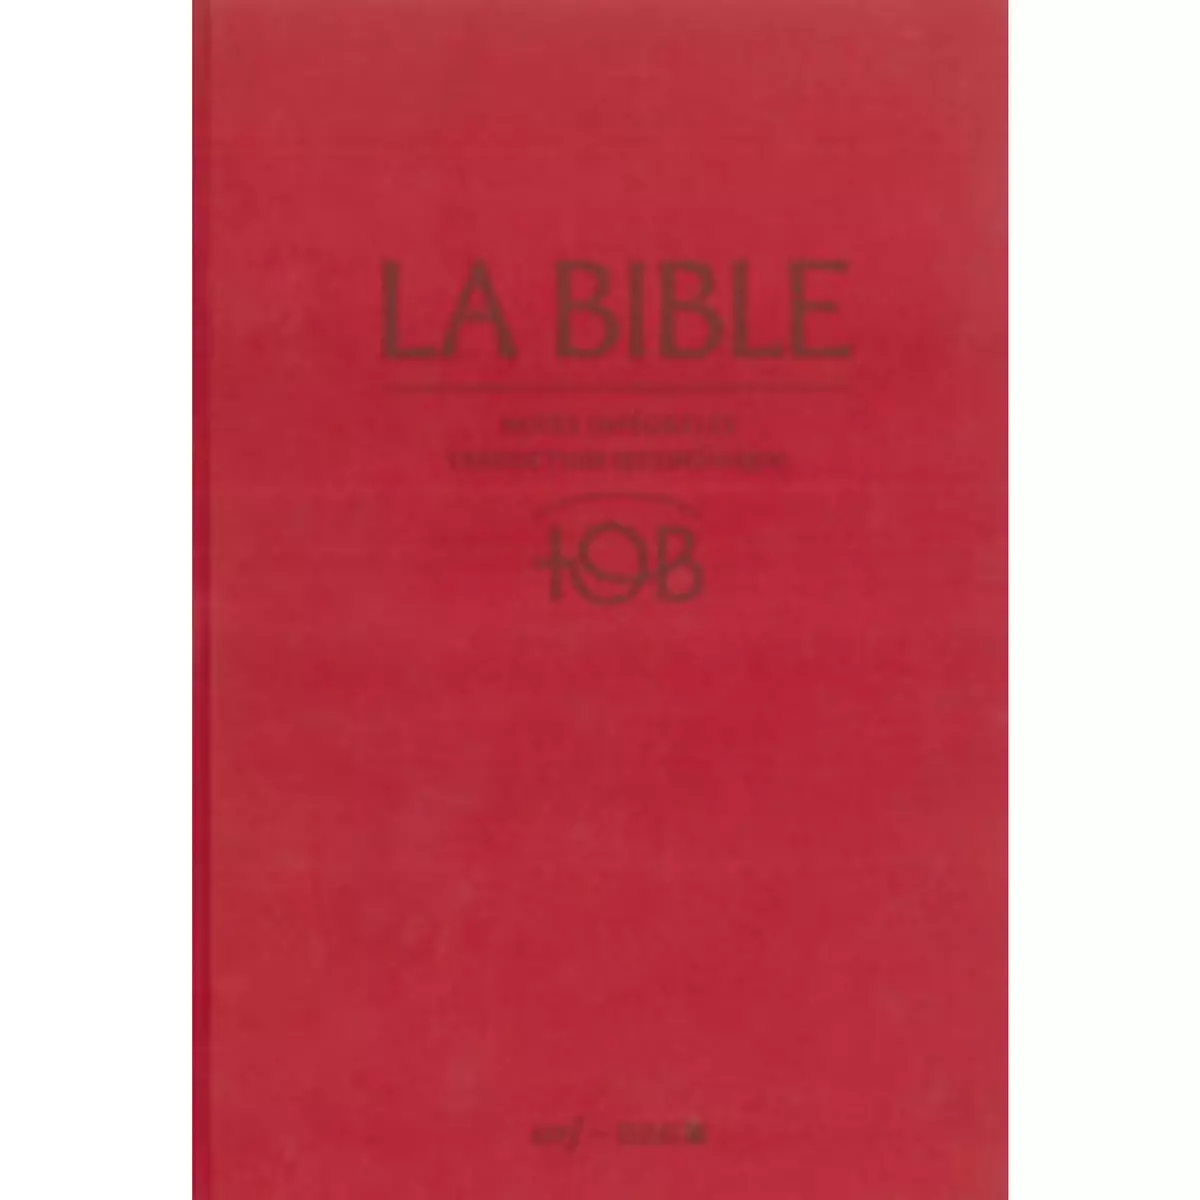  LA BIBLE TOB. NOTES INTEGRALES, TRADUCTION OECUMENIQUE, 11E EDITION, Éditions du Cerf